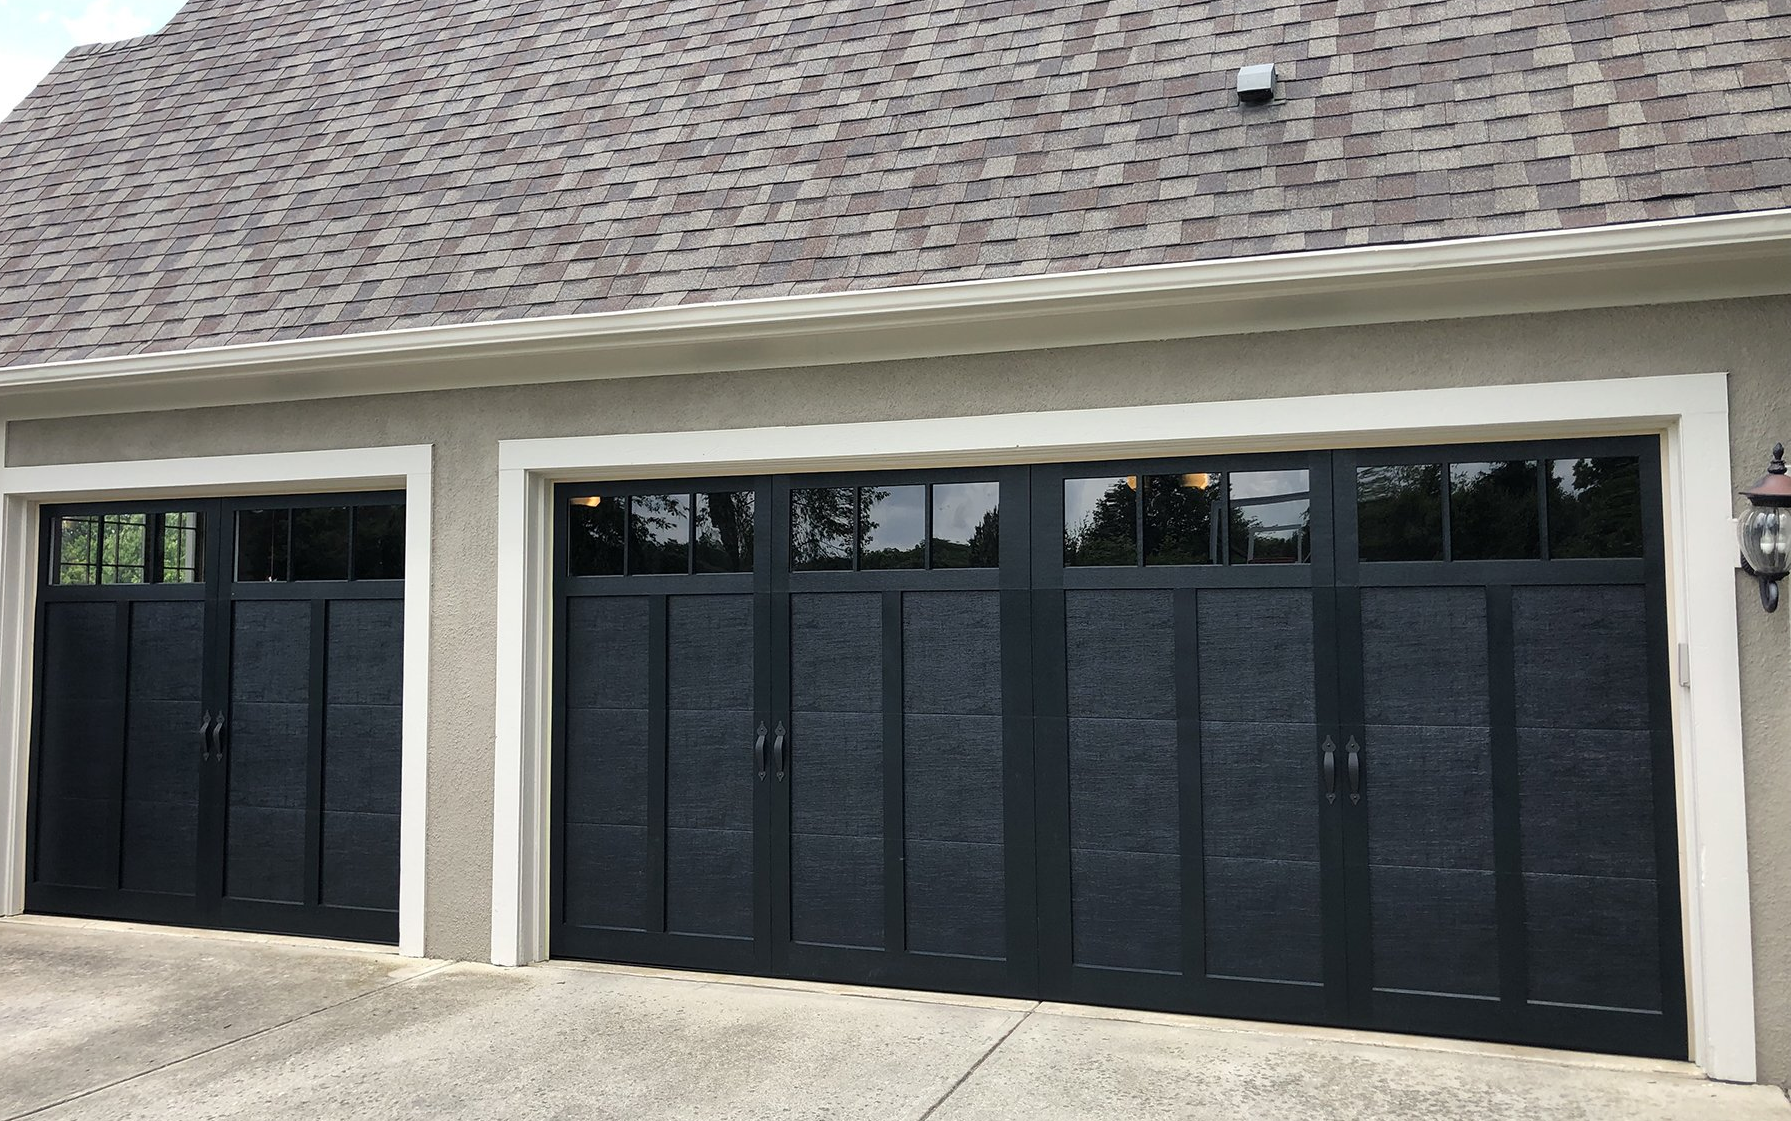 Exterior With New Garage Doors, Haas Residential Garage Door Reviews